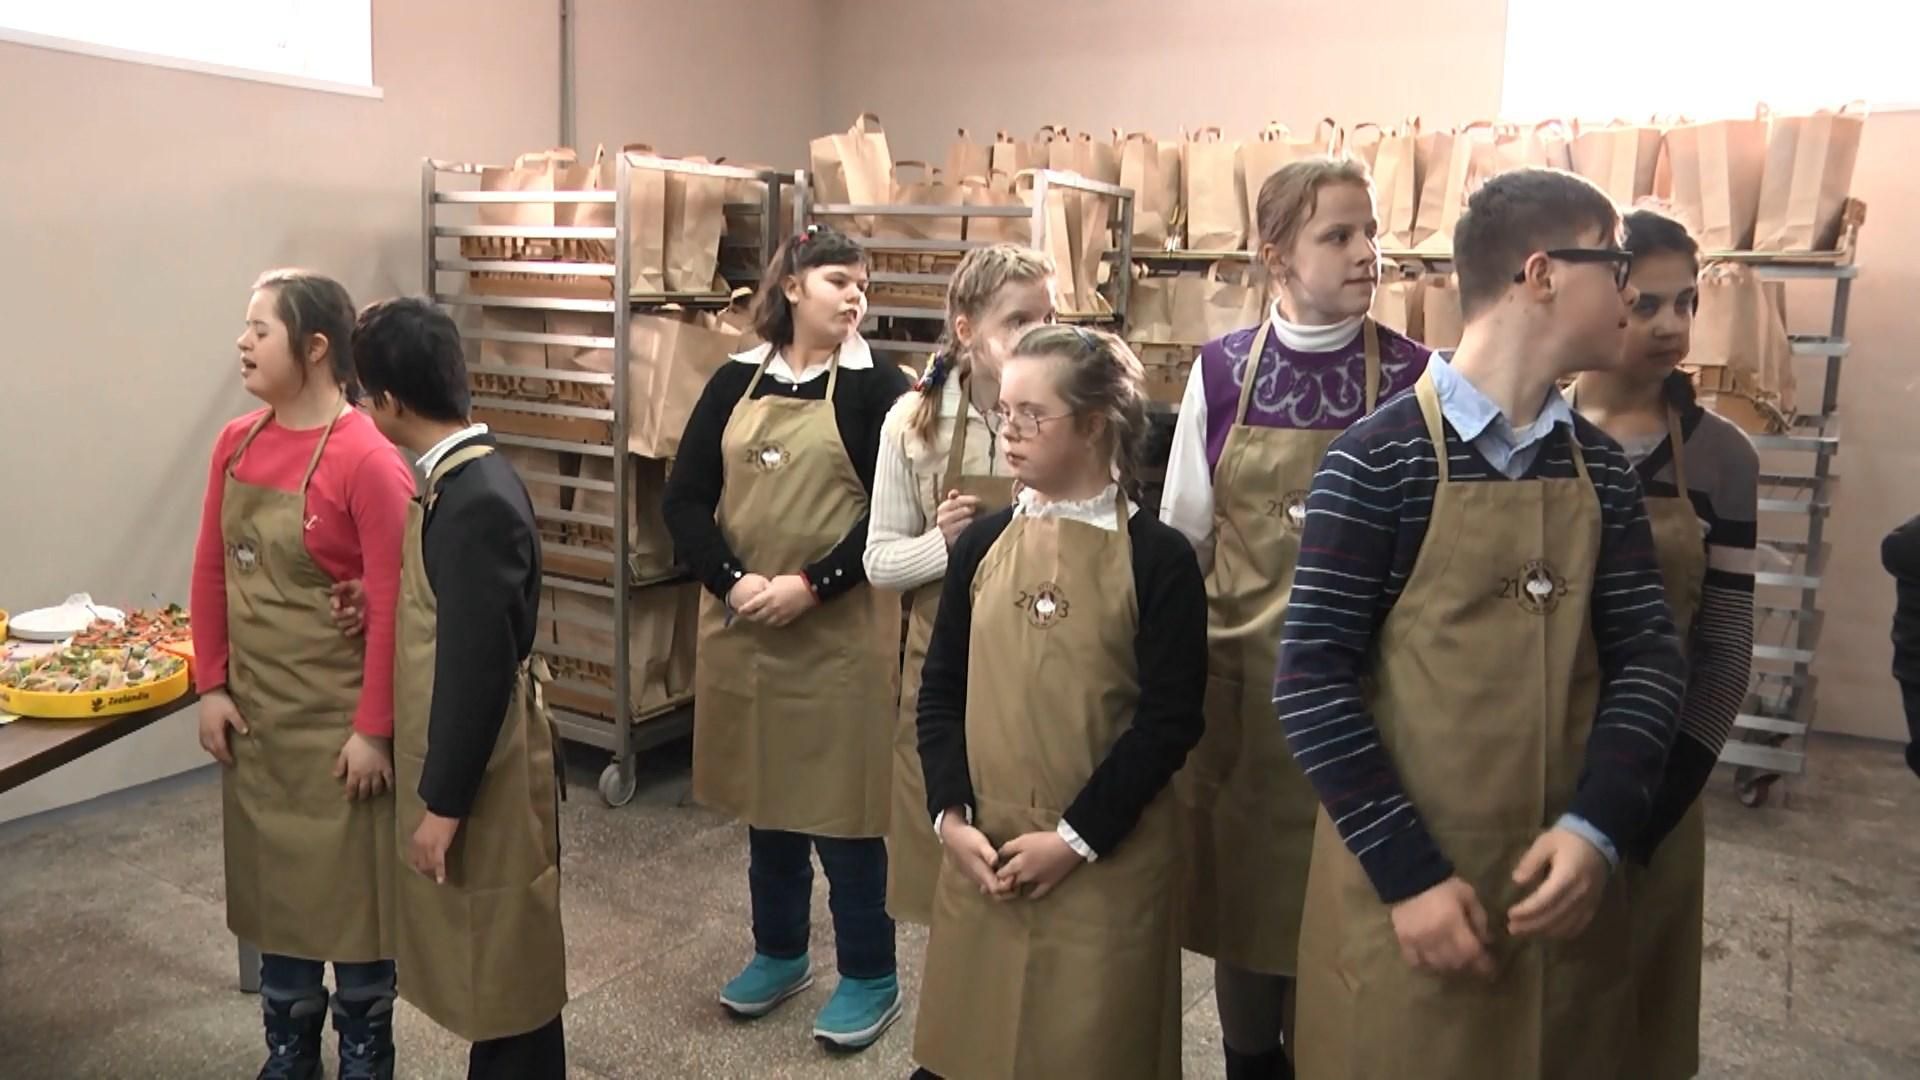 Під Києвом відкрили пекарню, де працюватимуть люди із синдромом Дауна